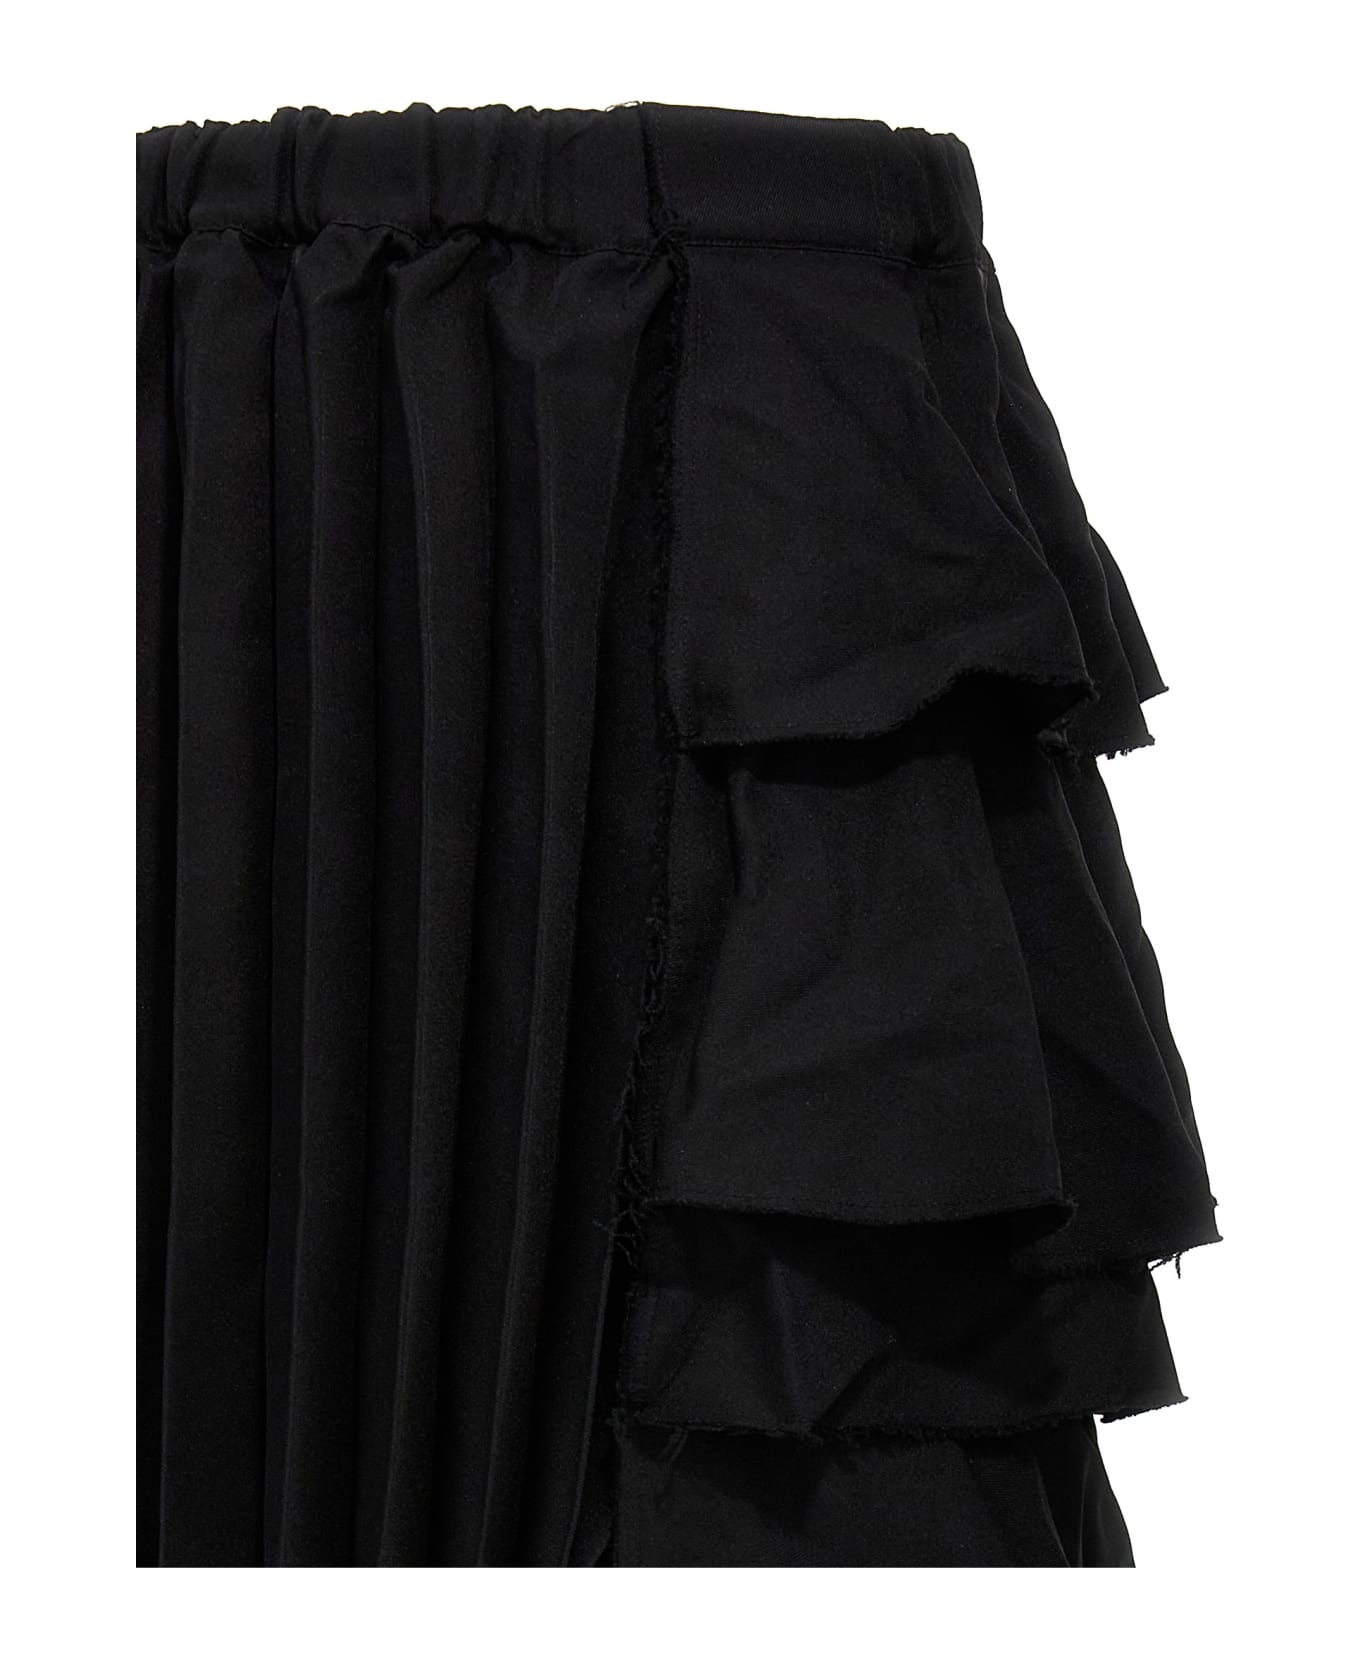 Black Comme des Garçons Flounces And Pleated Skirt - Black  